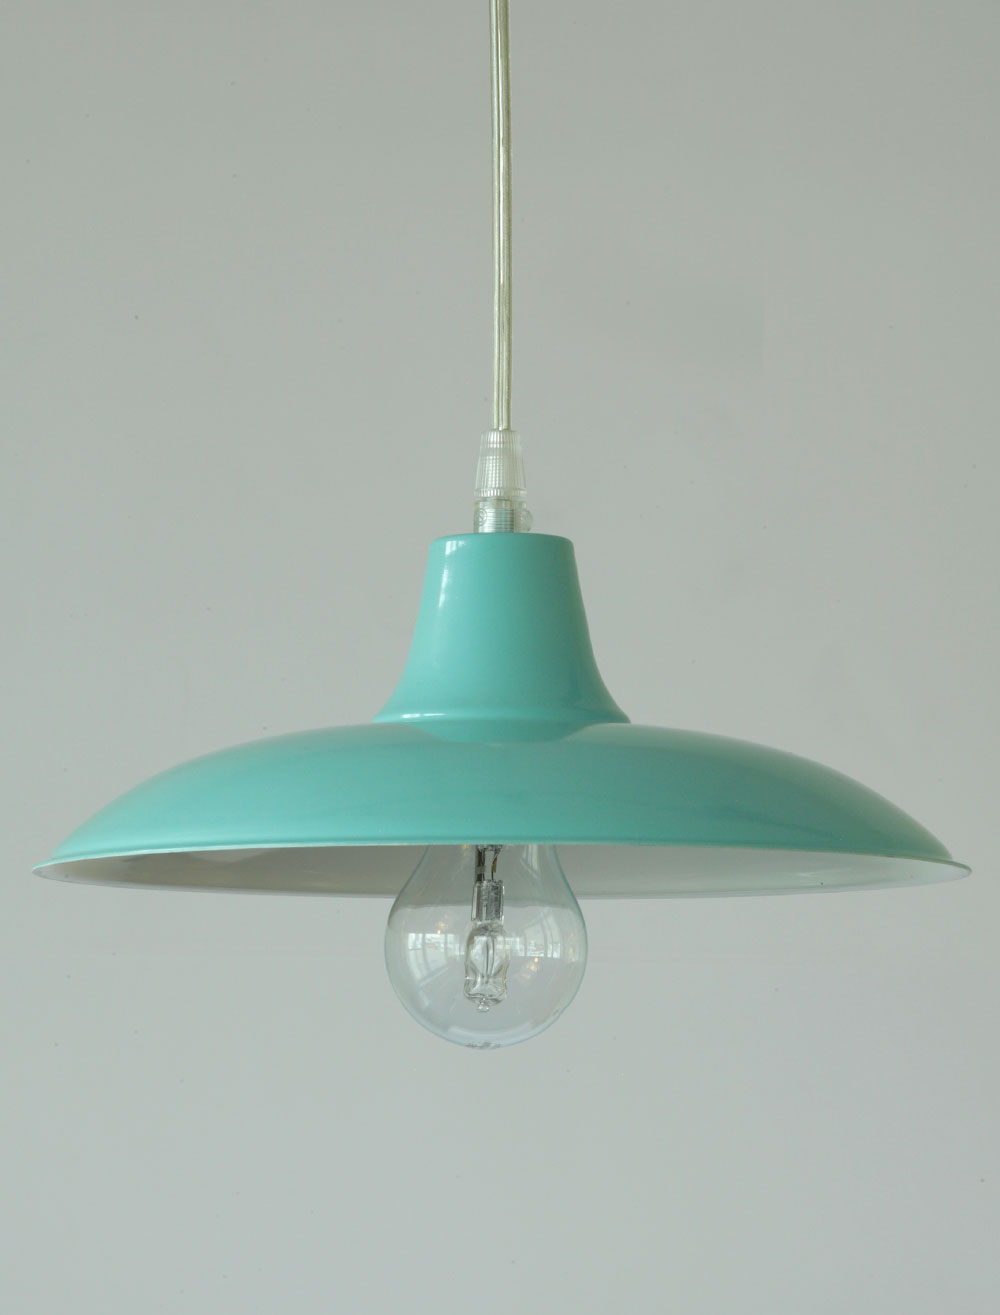 Einfache Pendelleuchte mit flachem Metall-Schirm, viele Farben: kleines Modell Ø 26 cm, in RAL-Farbe 6027 Lichtgrün (Sondermodell mit Transparentkabel)